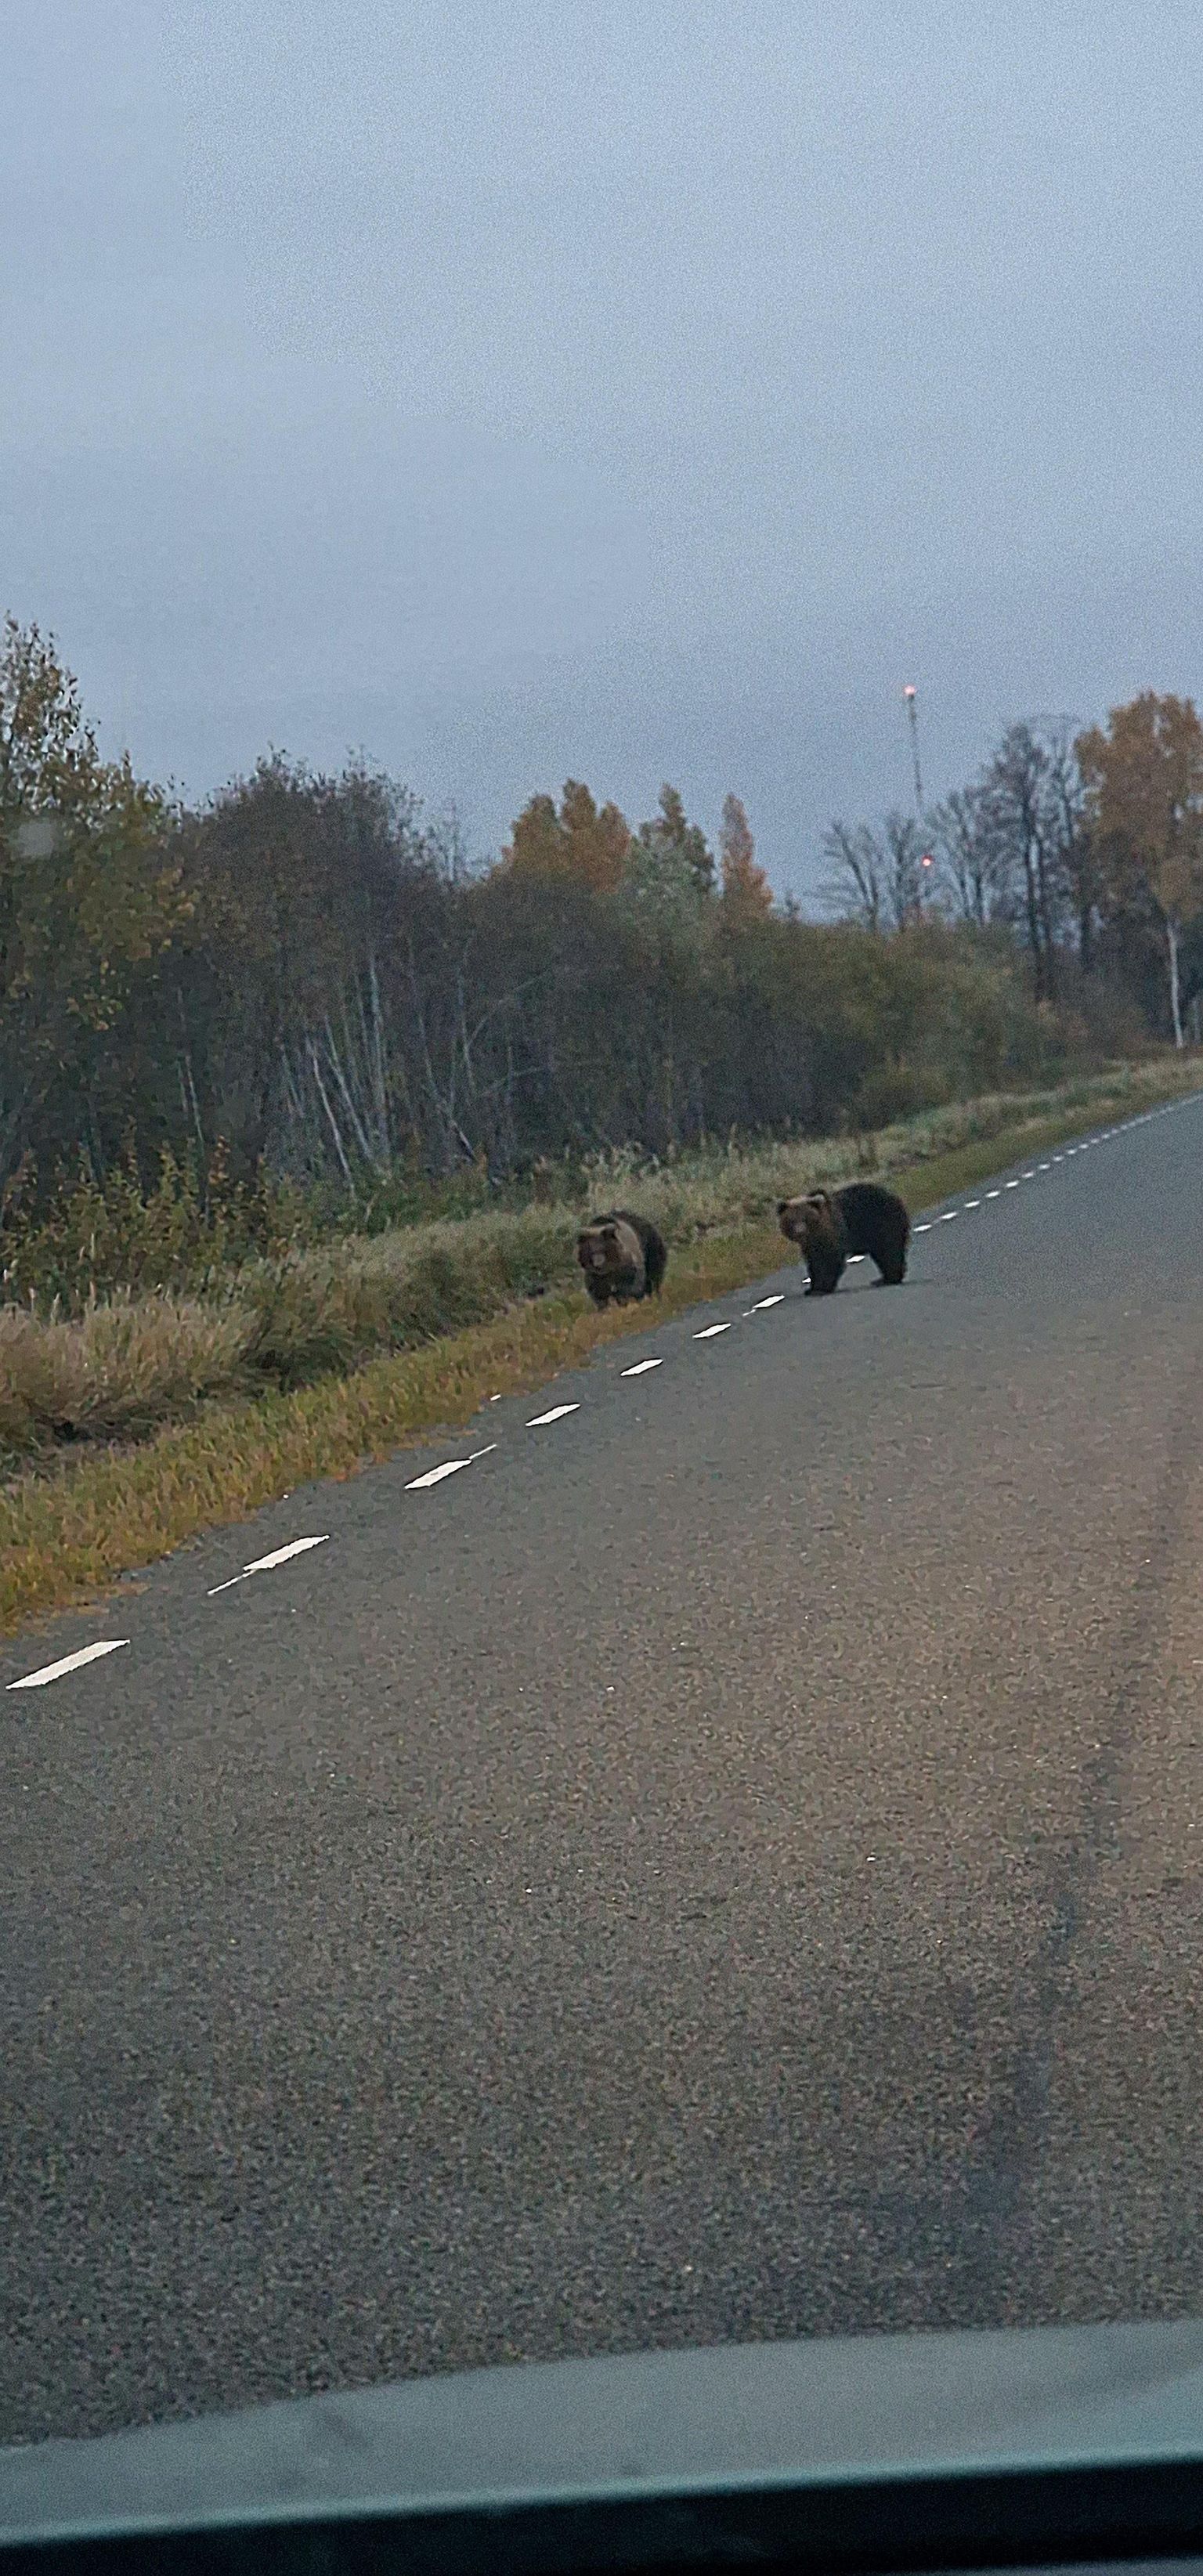 Медведь шел к машине и остановился только тогда, когда второй косолапый вышел на дорогу и они смогли вместе пересечь проезжую часть.